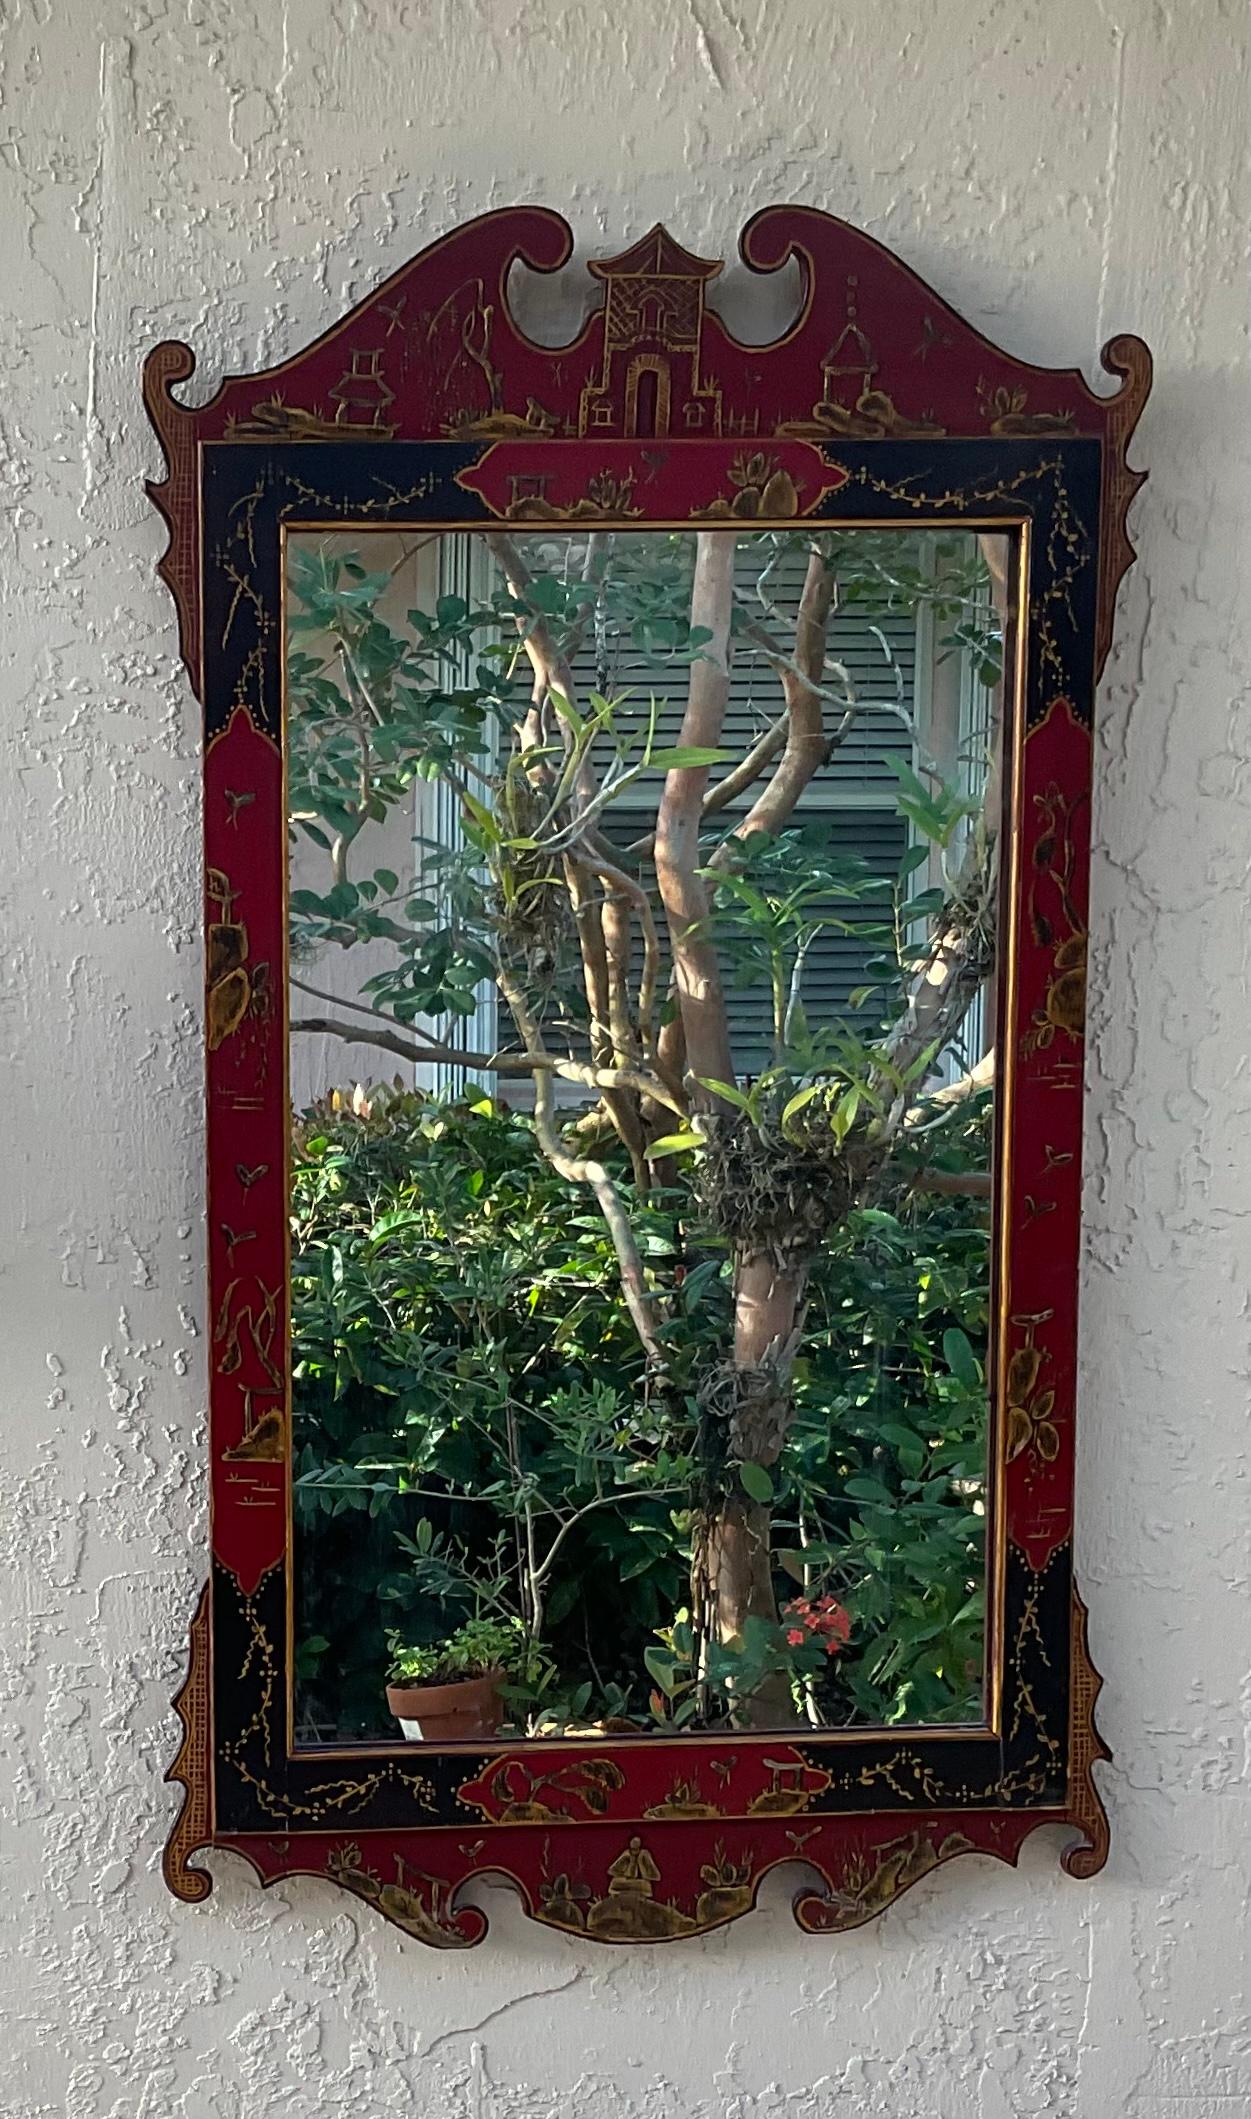 Schöne chinesische Spiegel in geschnitztem Holz, vergoldet mit lackiertem Finish Gartenmotiv Dekorationen. In tollem Vintage-Zustand mit Alterserscheinungen.
Original-Glas ist in angemessenem Zustand aufgrund von Gebrauch und Alter, hat einige